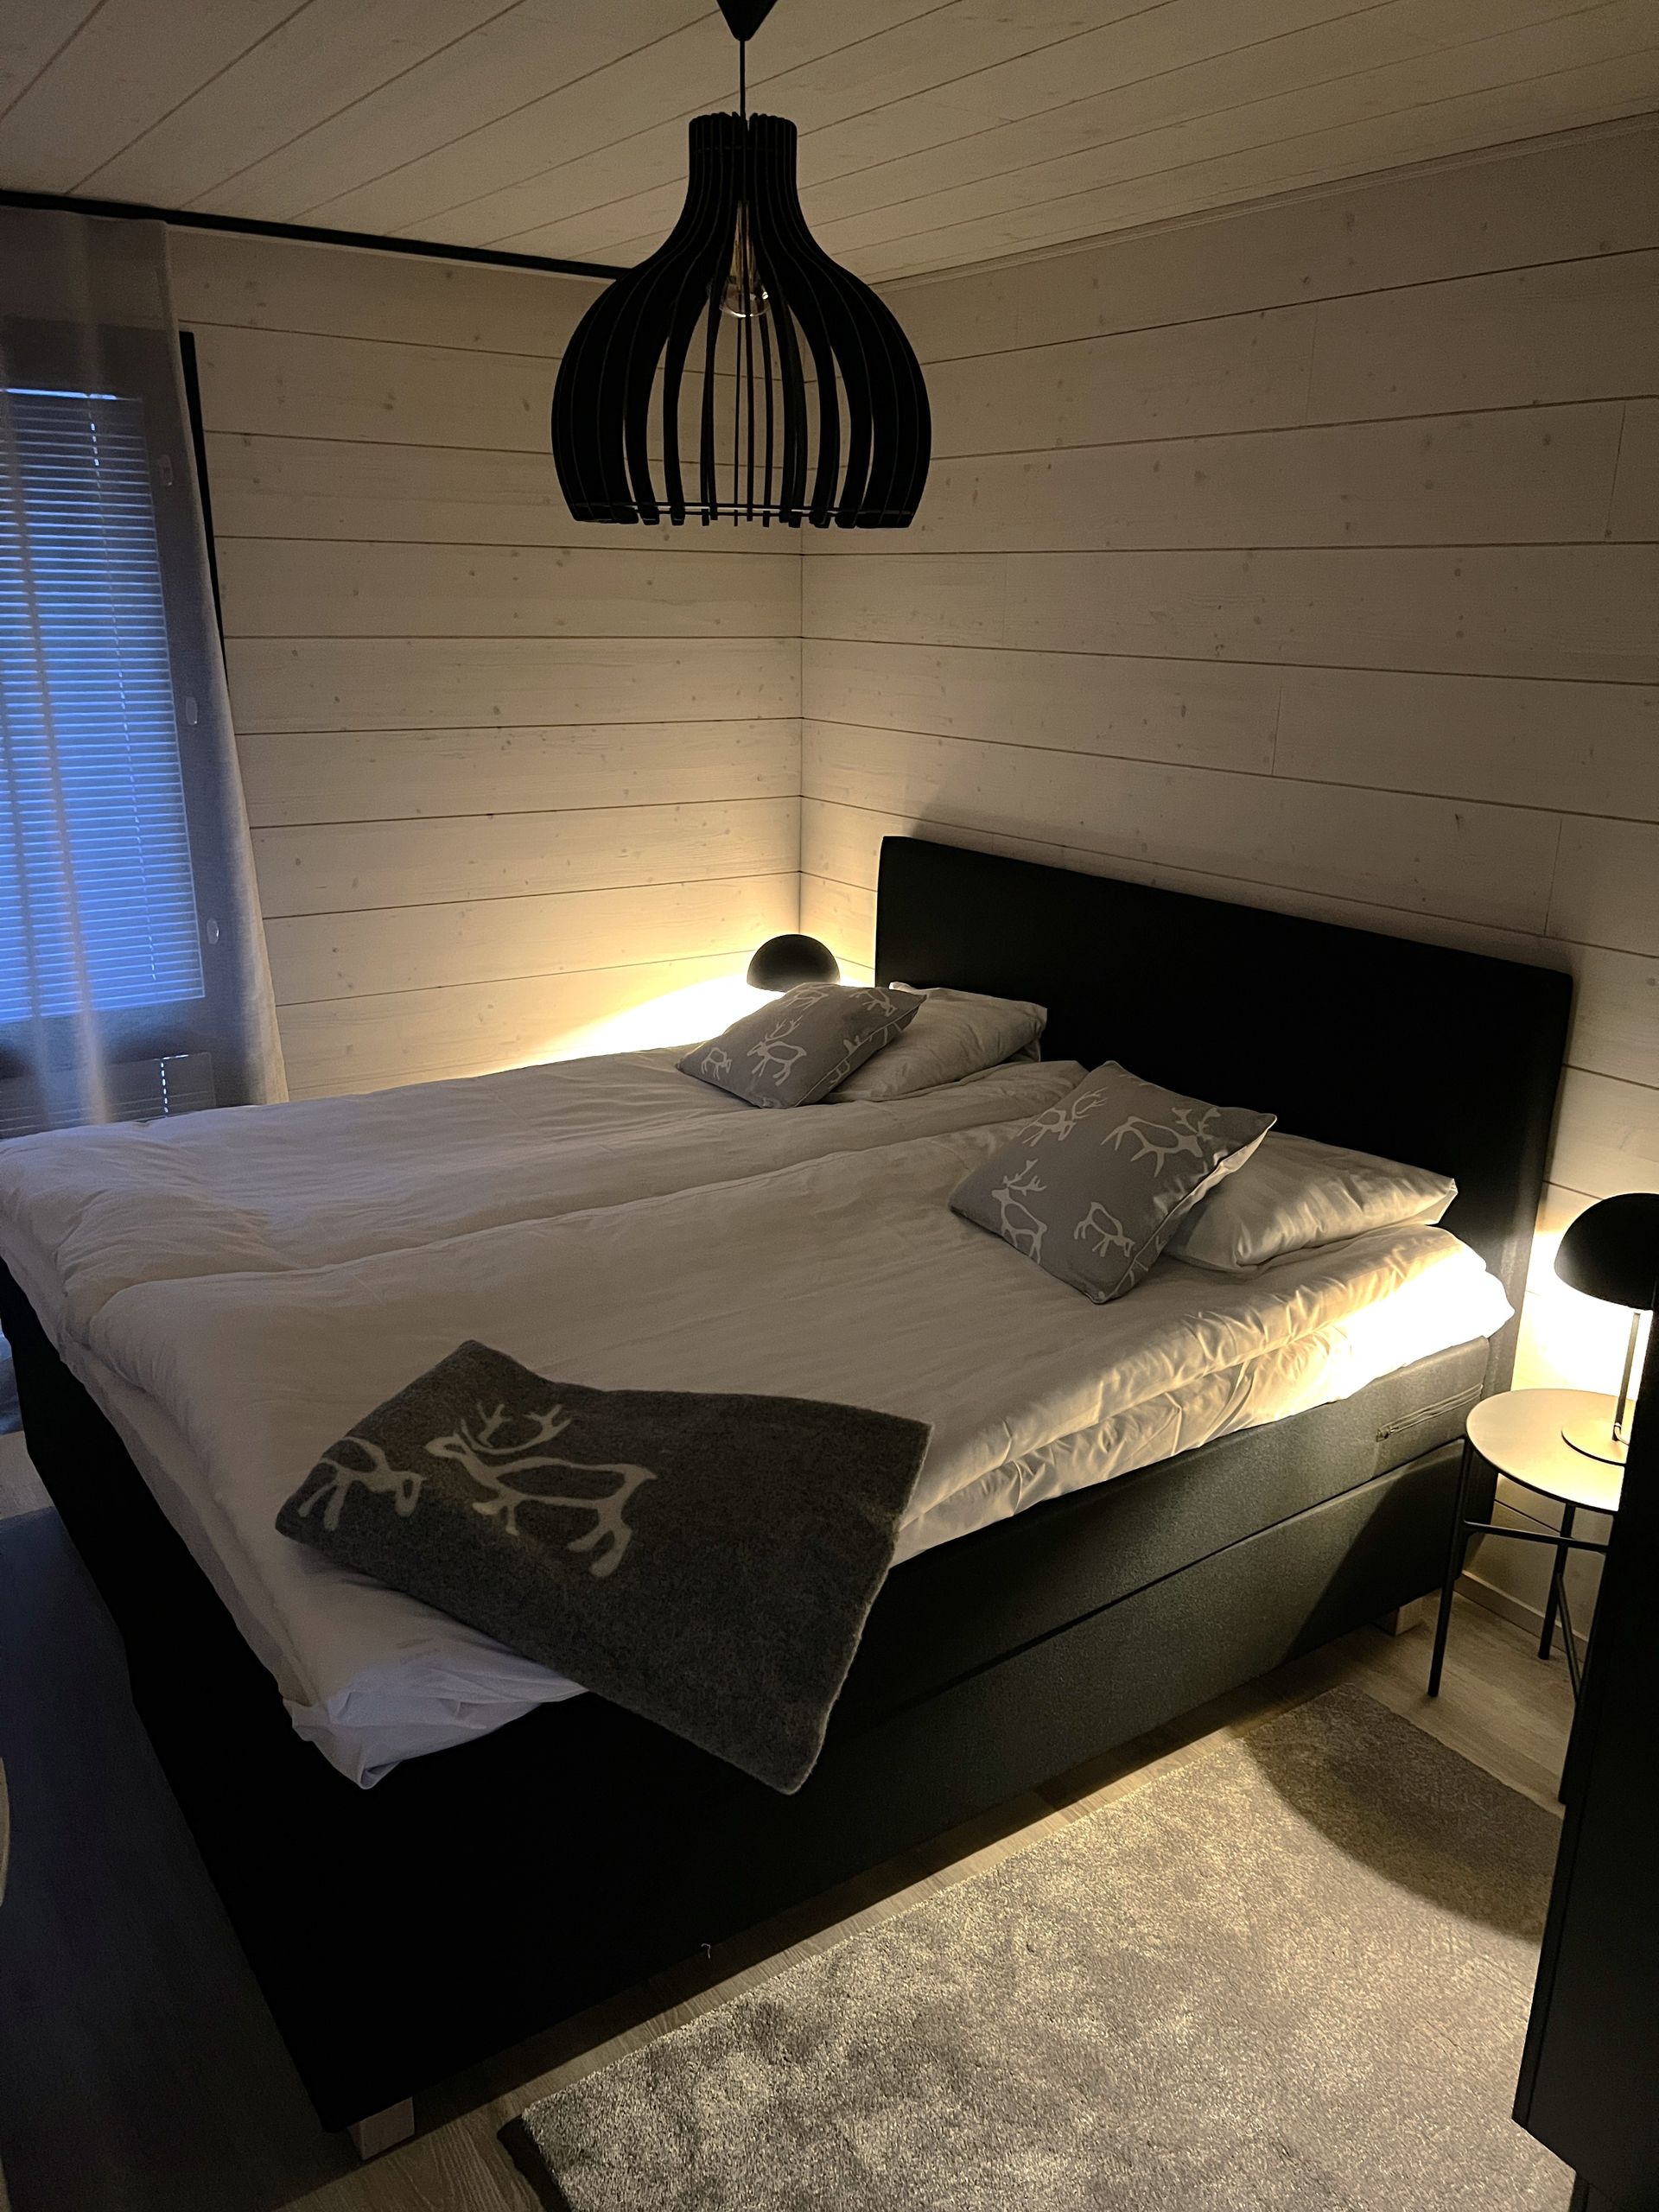 Een slaapkamer met twee bedden en een lamp die aan het plafond hangt.